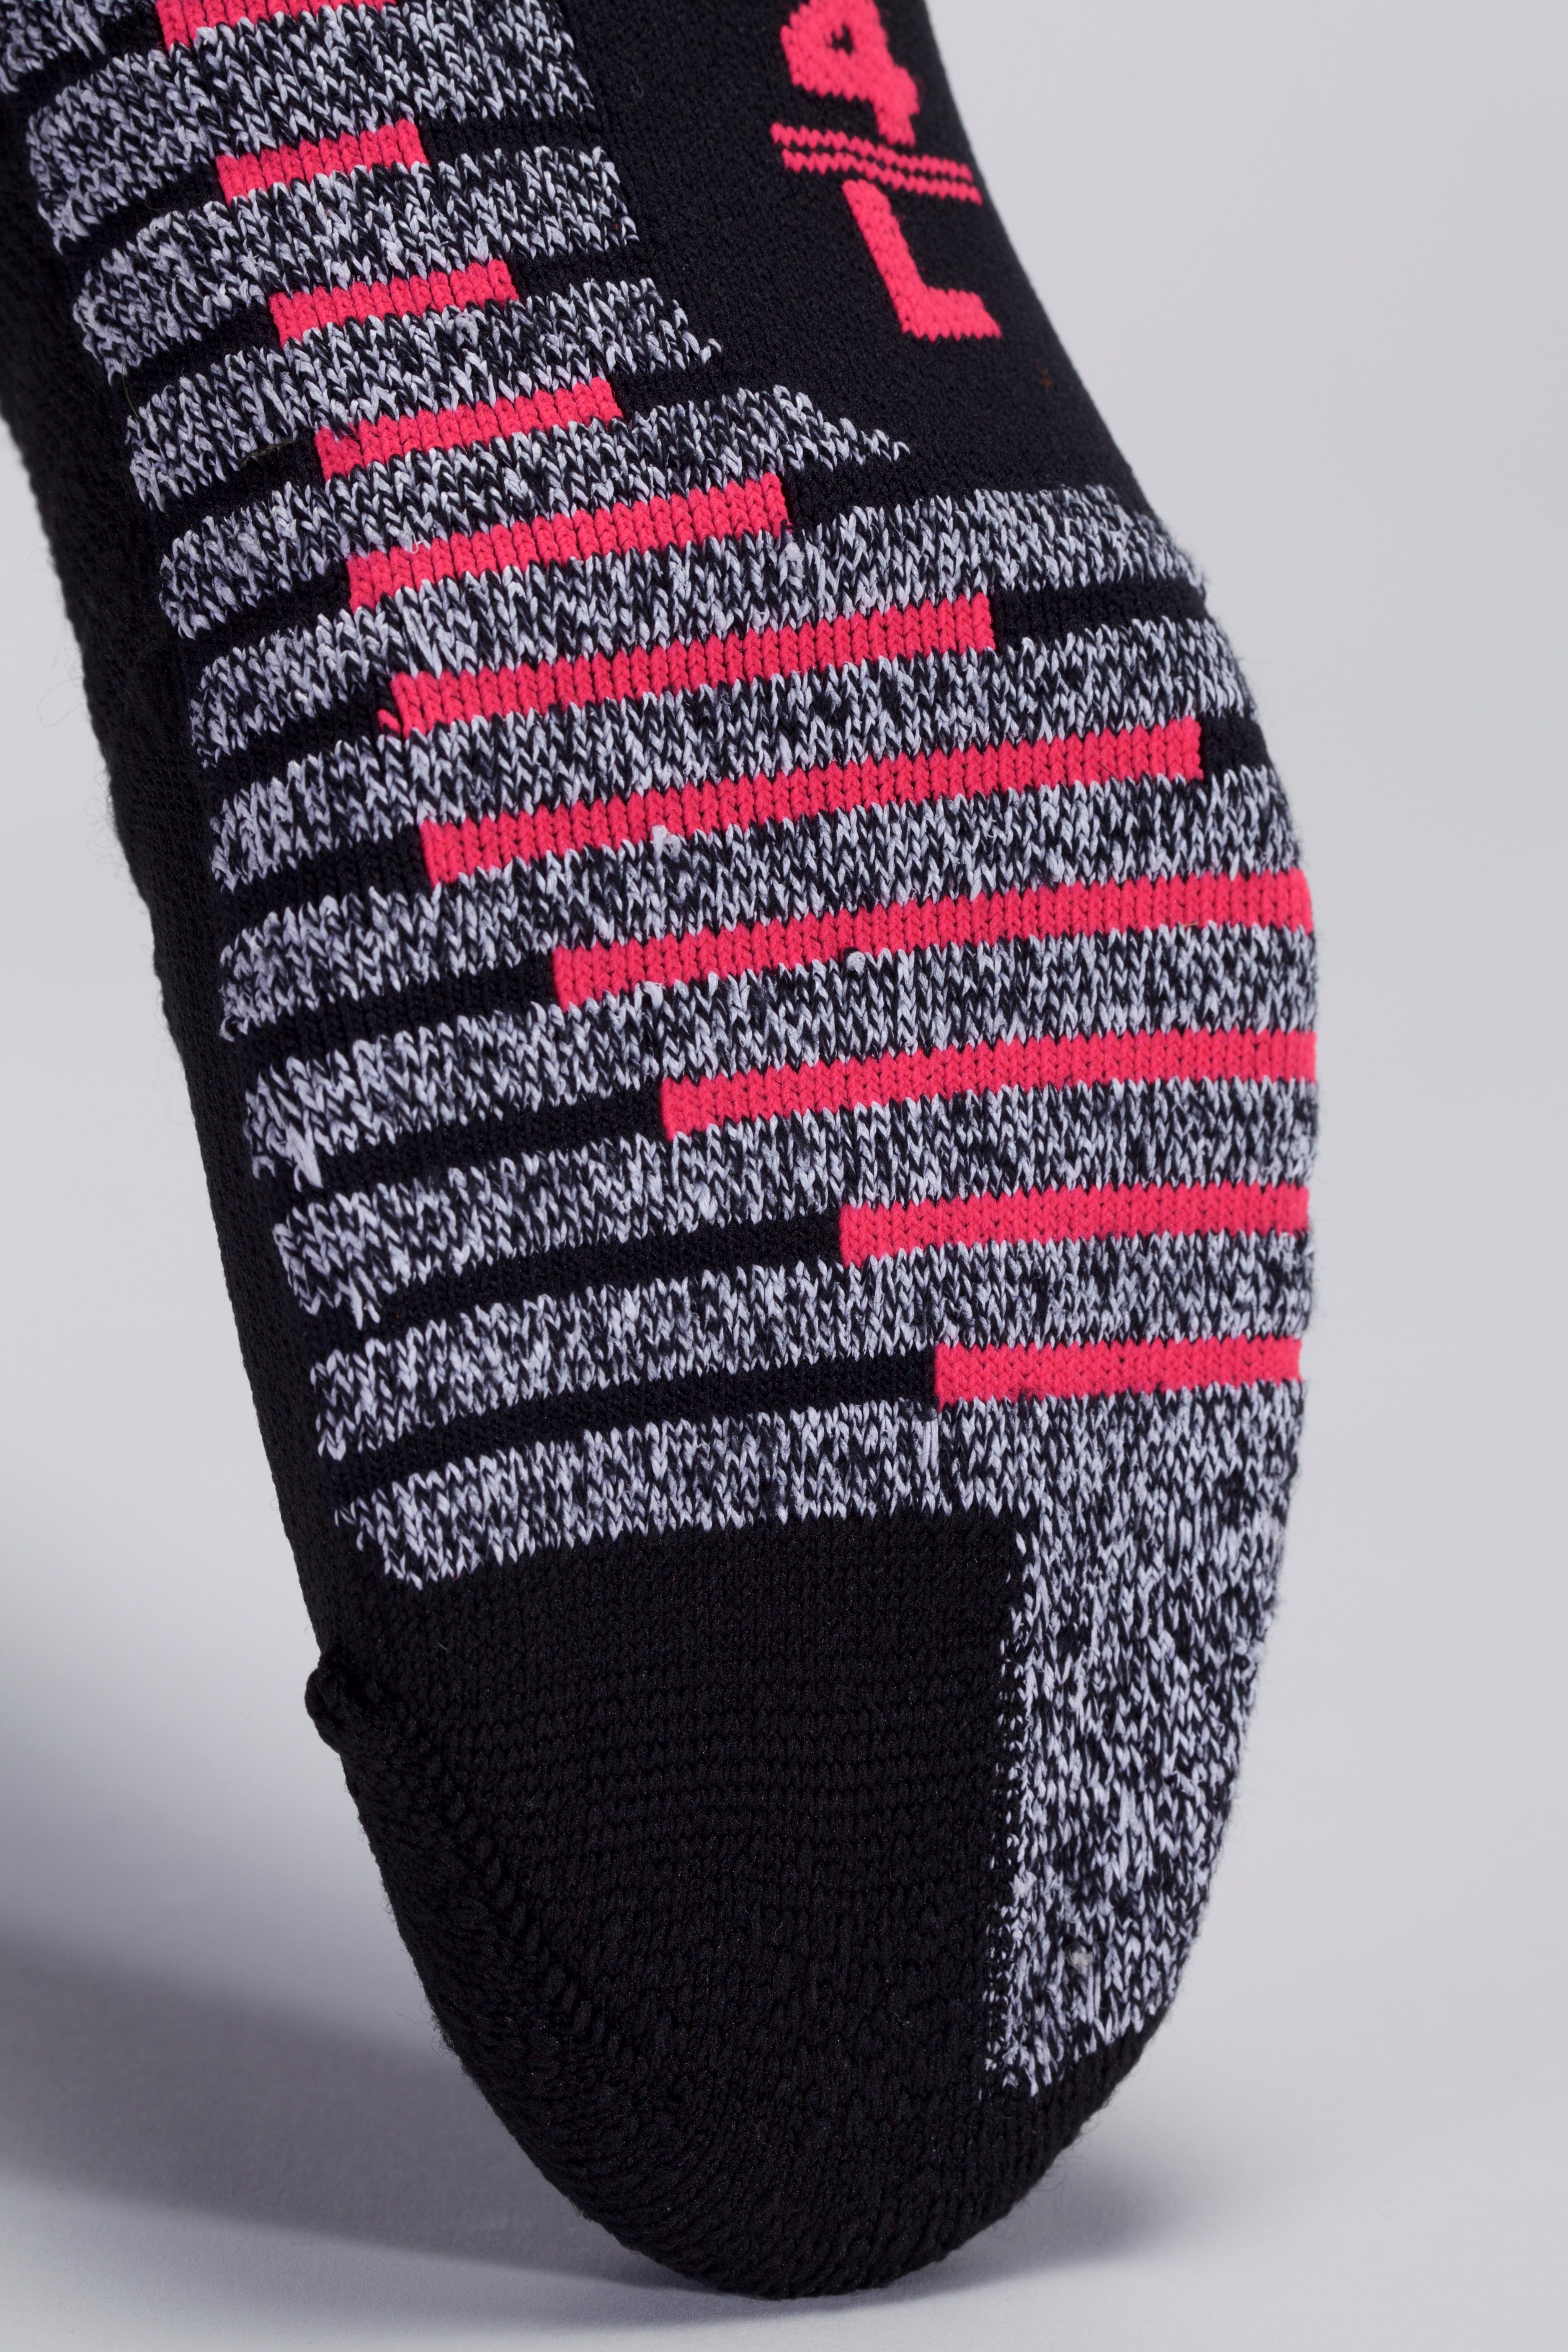 Wear Test Review: Nike Grip Socks